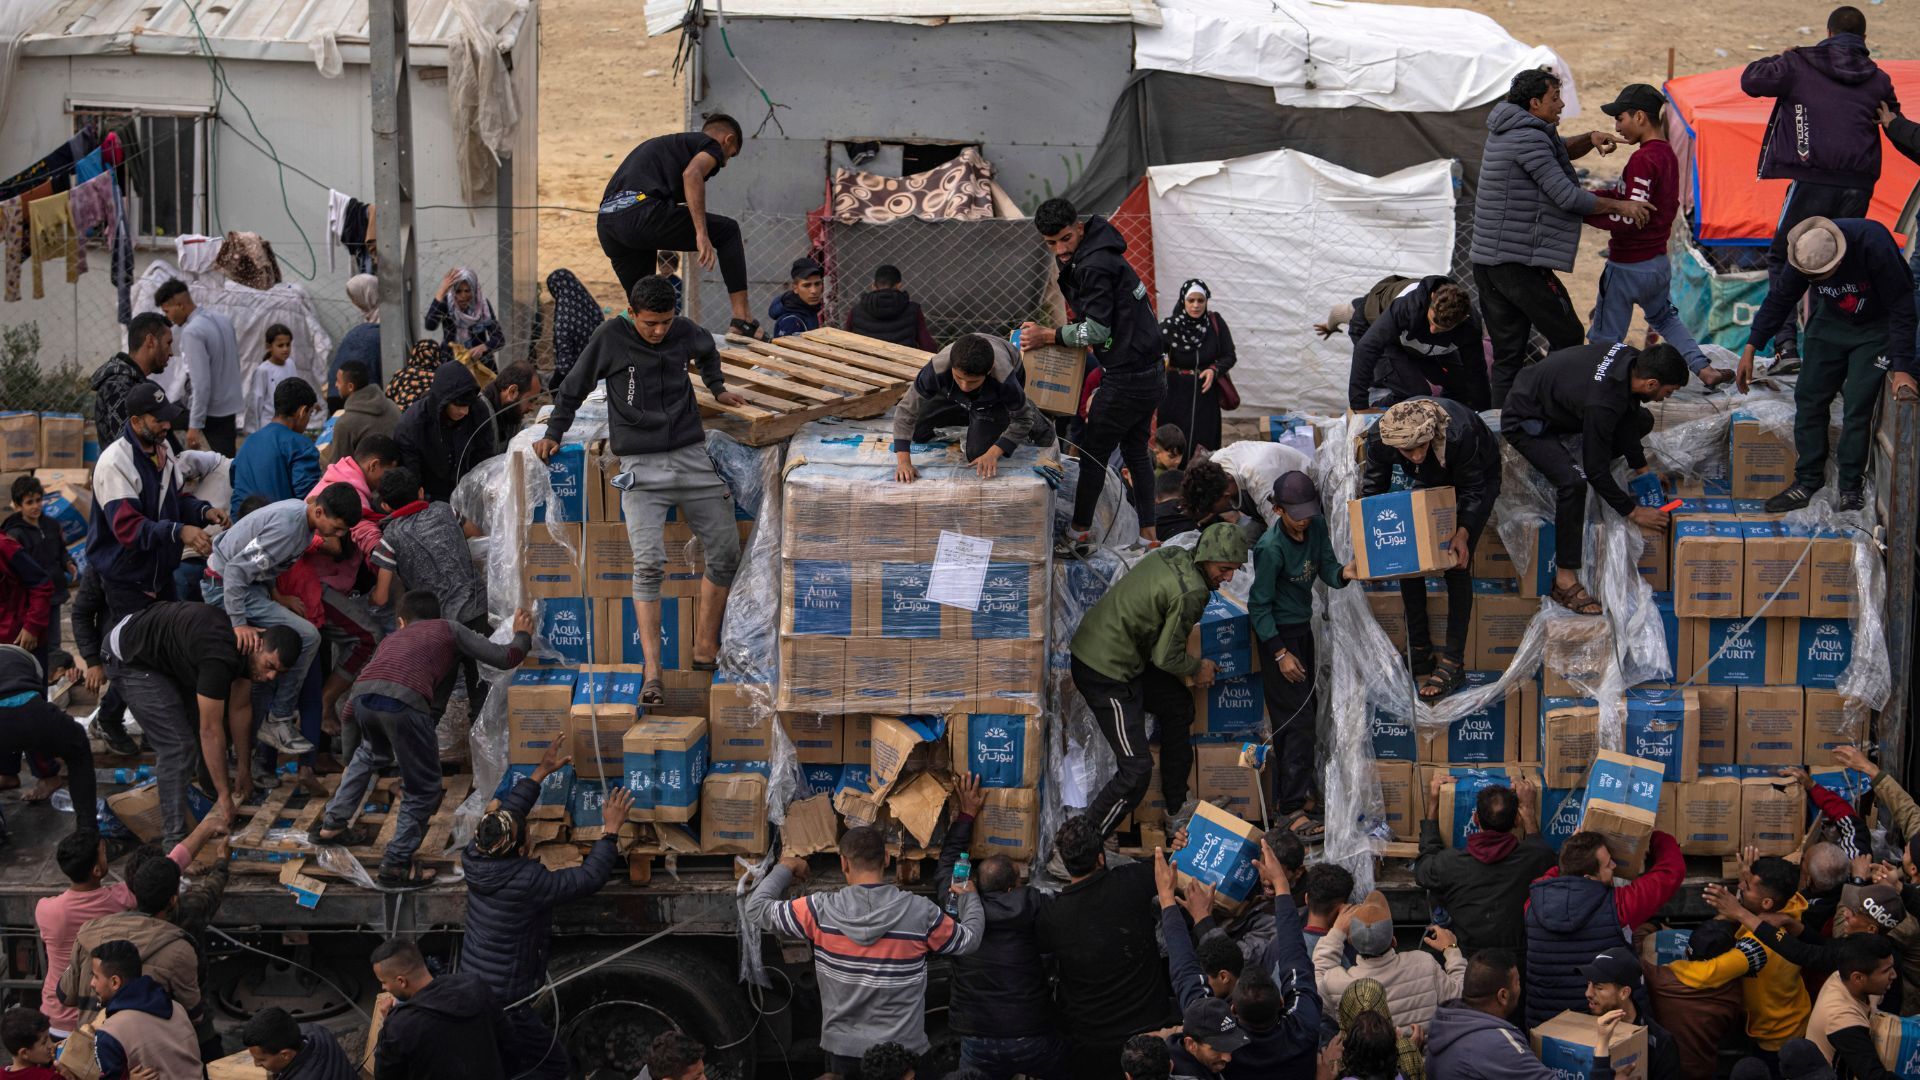 فلسطينيون يتضورون جوعا ينهبون شاحنات المساعدات مع تصاعد اليأس في رفح بغزة |  أخبار الصراع الإسرائيلي الفلسطيني